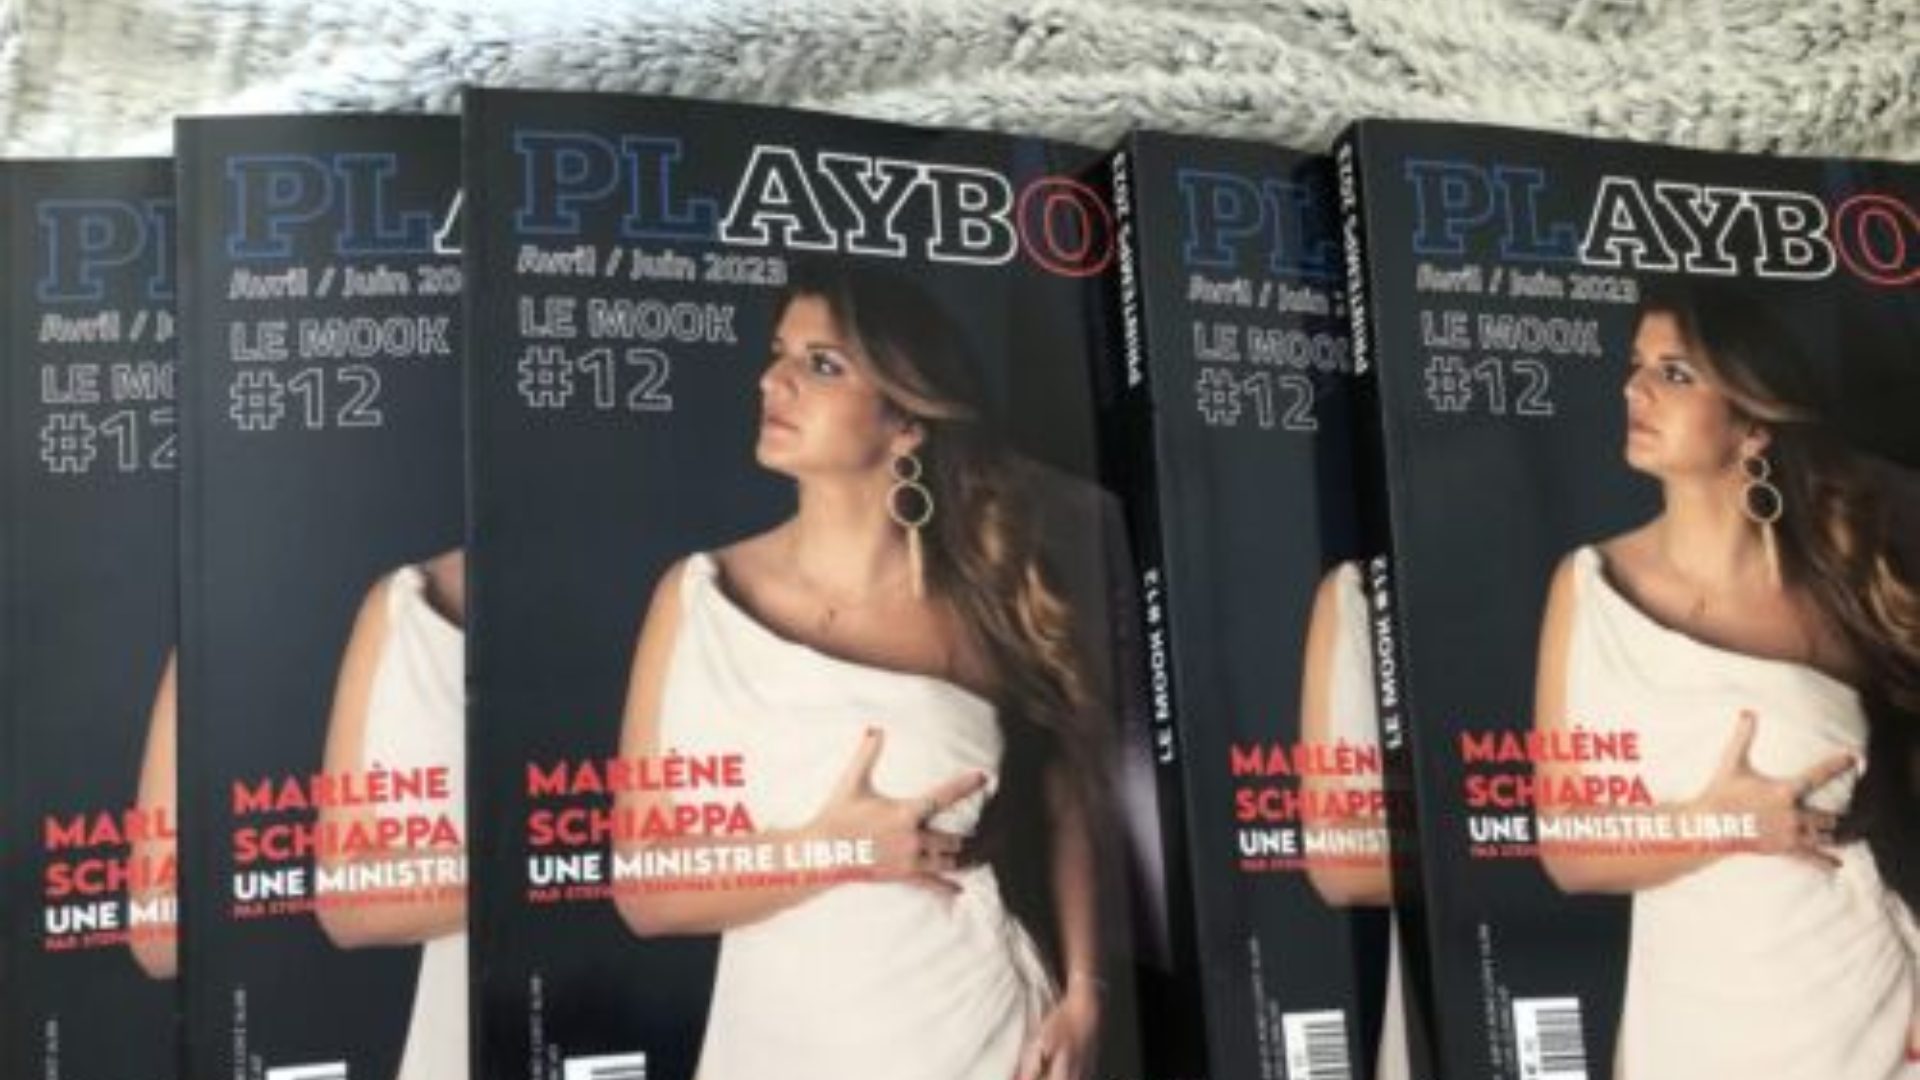 Segundo o The Idependet, a ministra francesa já publicou dezenas de livros sobre sexo e erotismo sob o pseudônimo de Marie Minelli - Foto: Reprodução/Twitter@LePaf